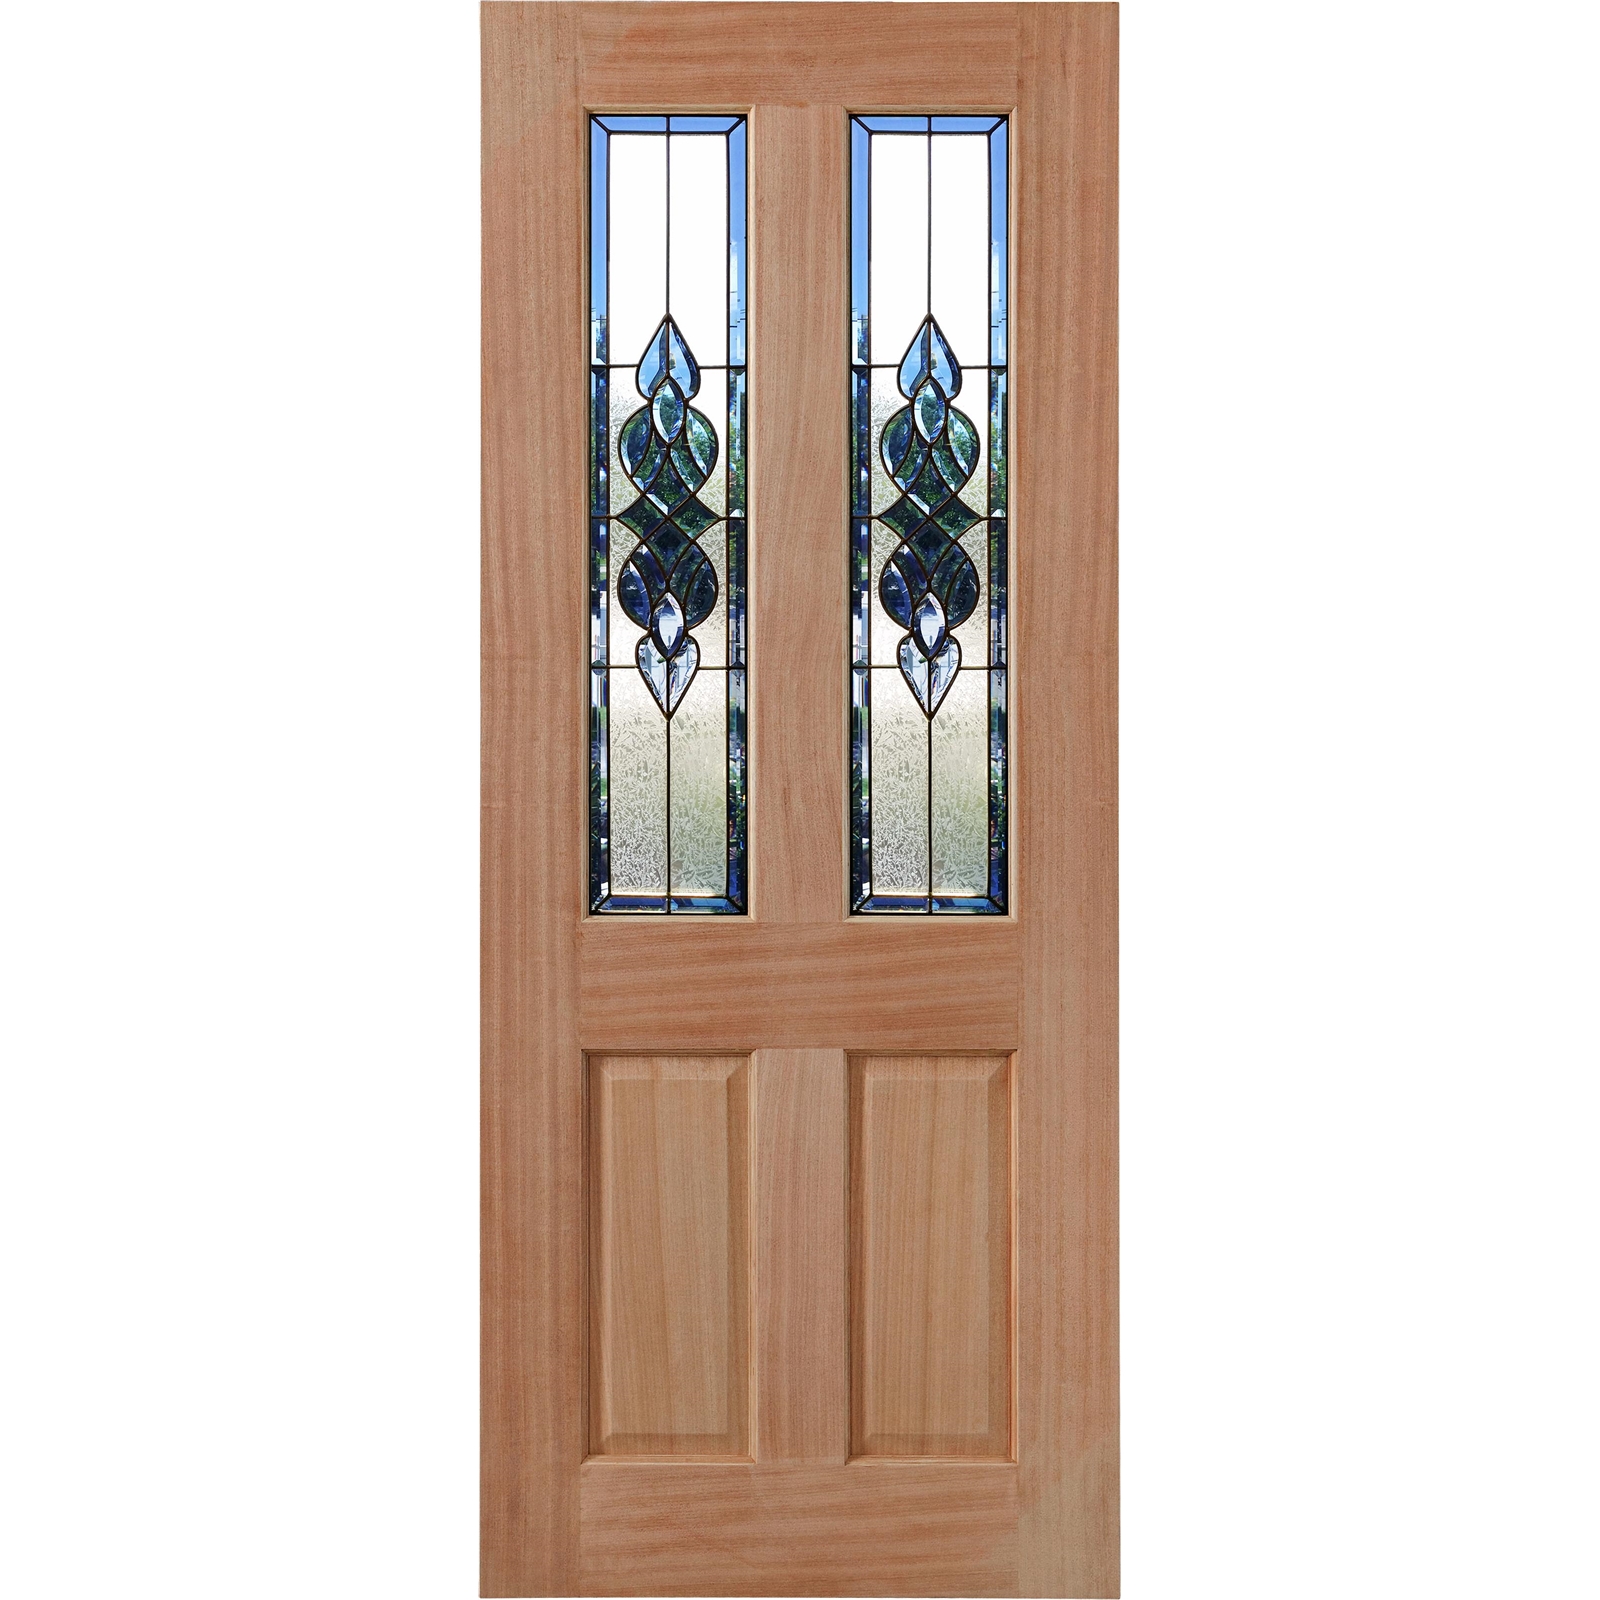 Woodcraft Doors 2040 x 820 x 40mm Cass Entrance Door With Blue Bevelled Glass